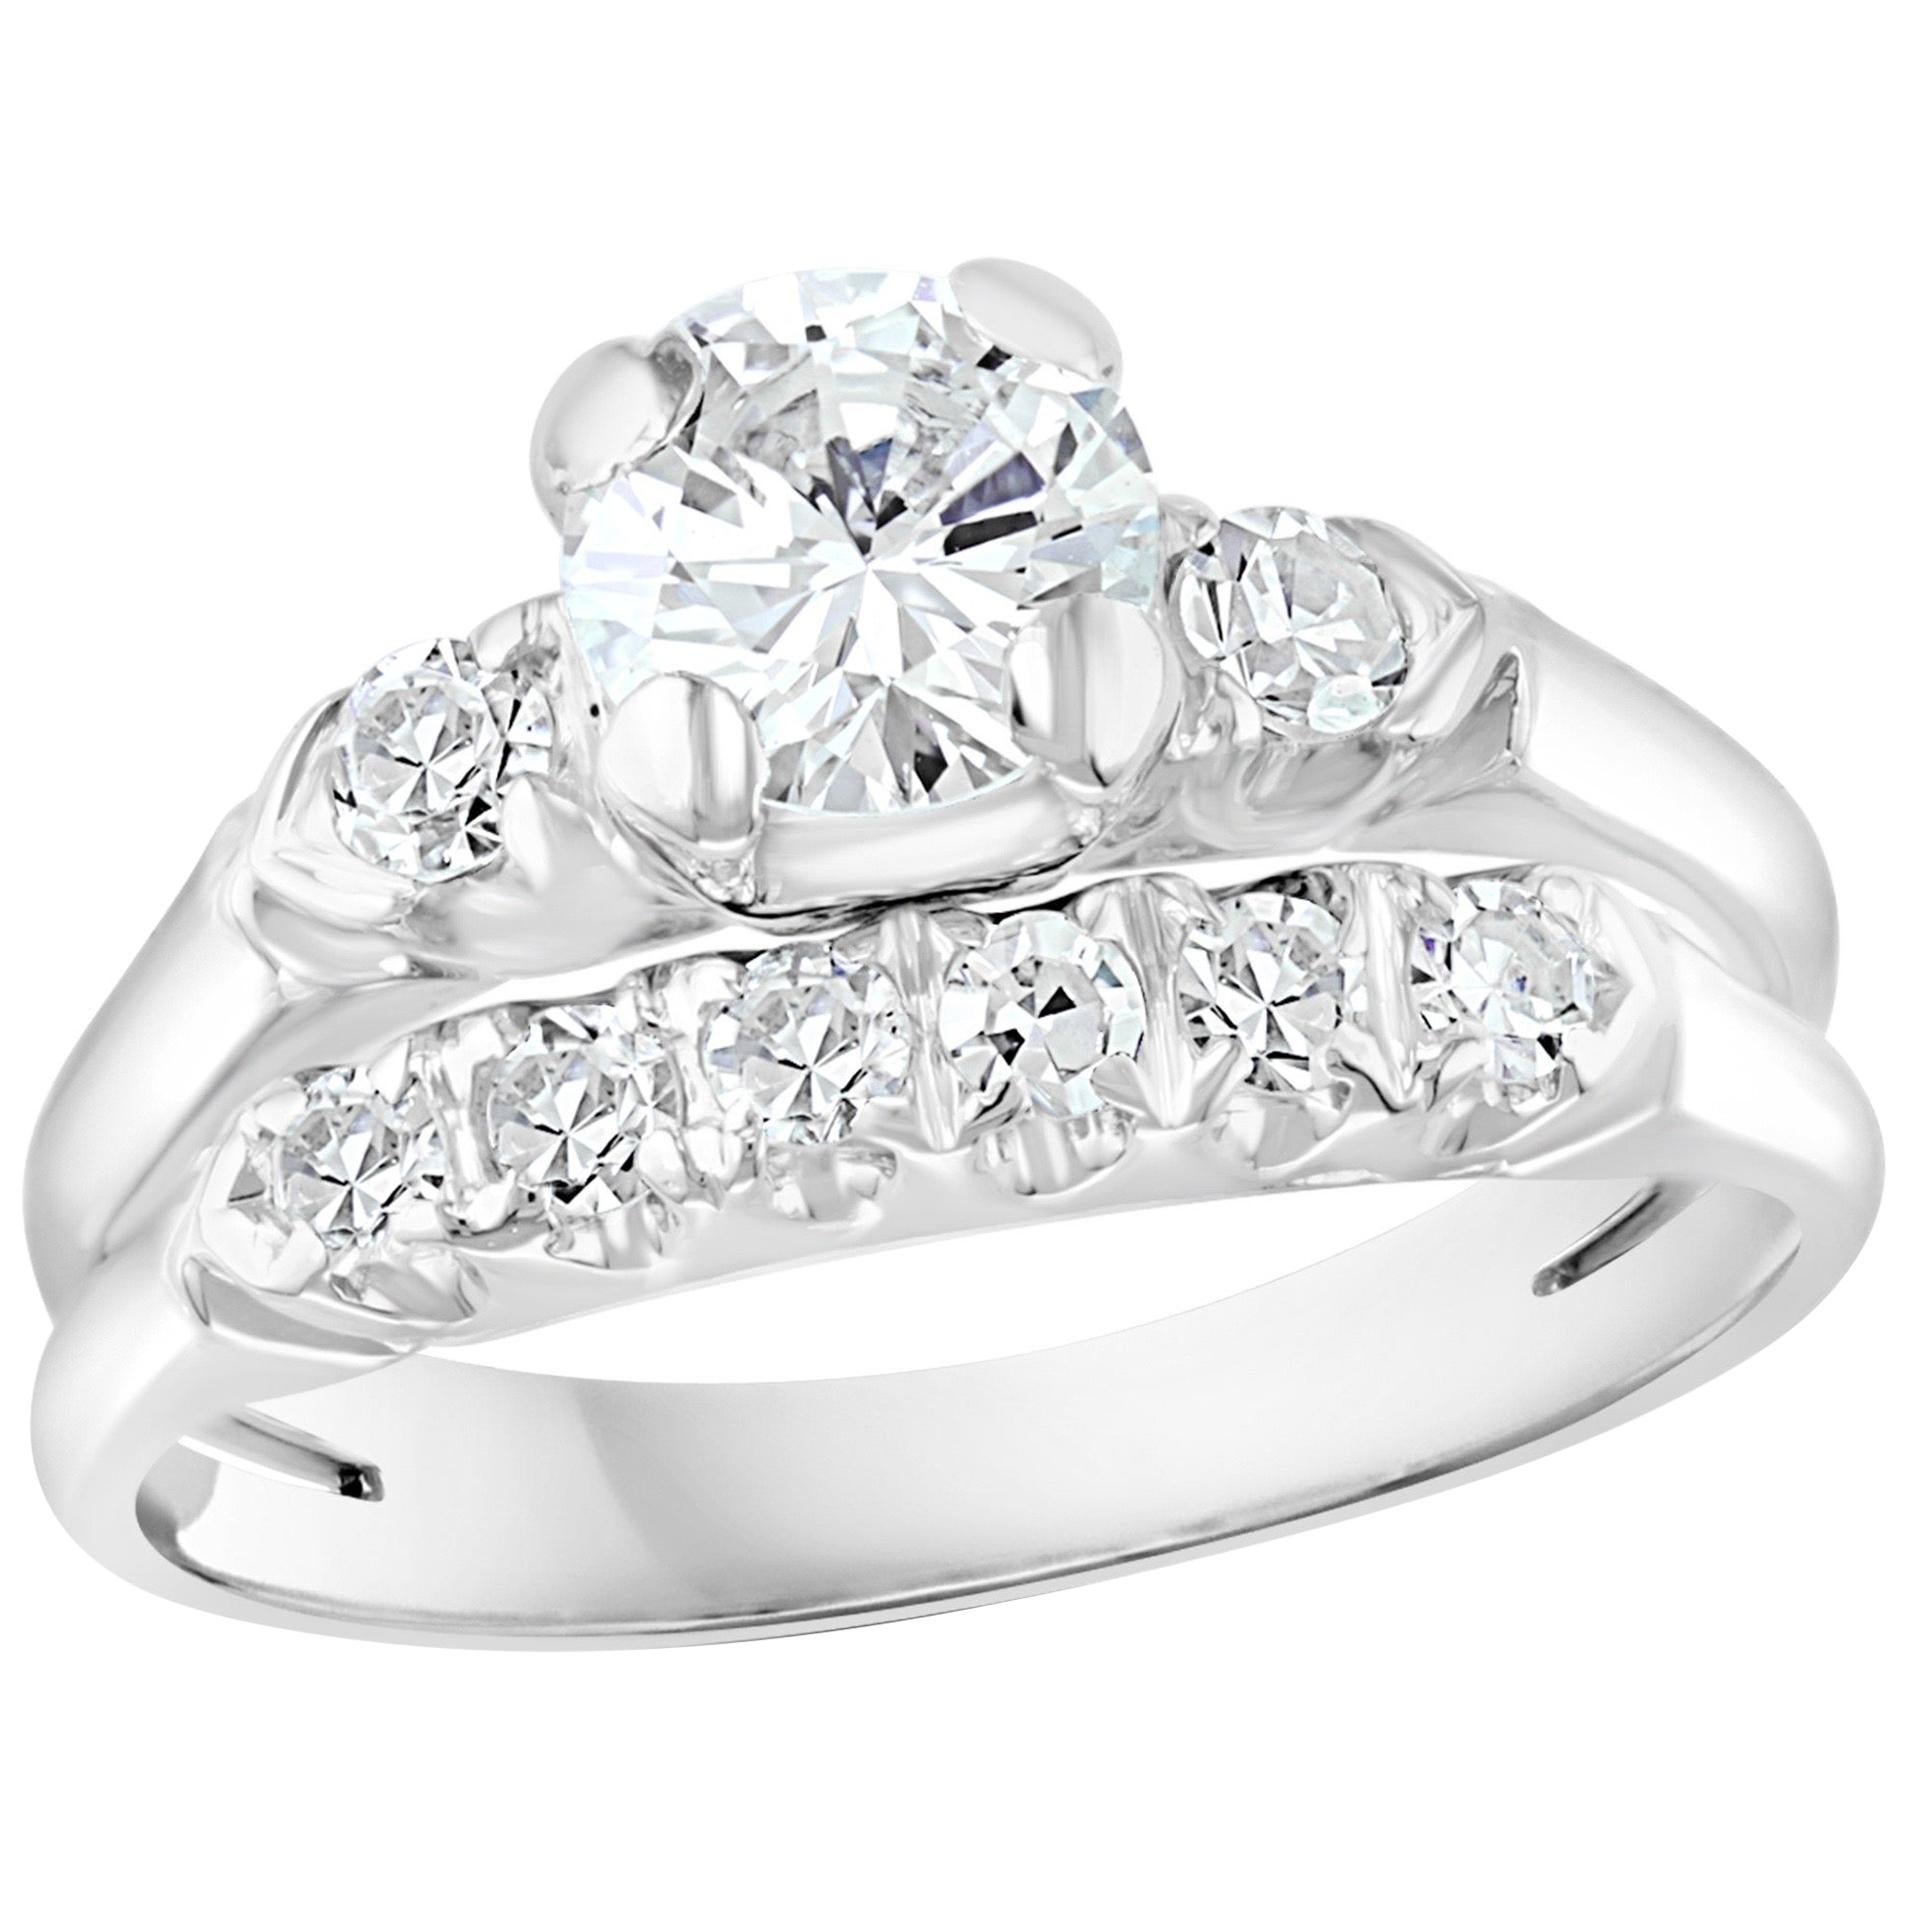 Bague et anneau en or blanc 14 carats avec diamants solitaires ronds au centre d'environ 0,6 carat